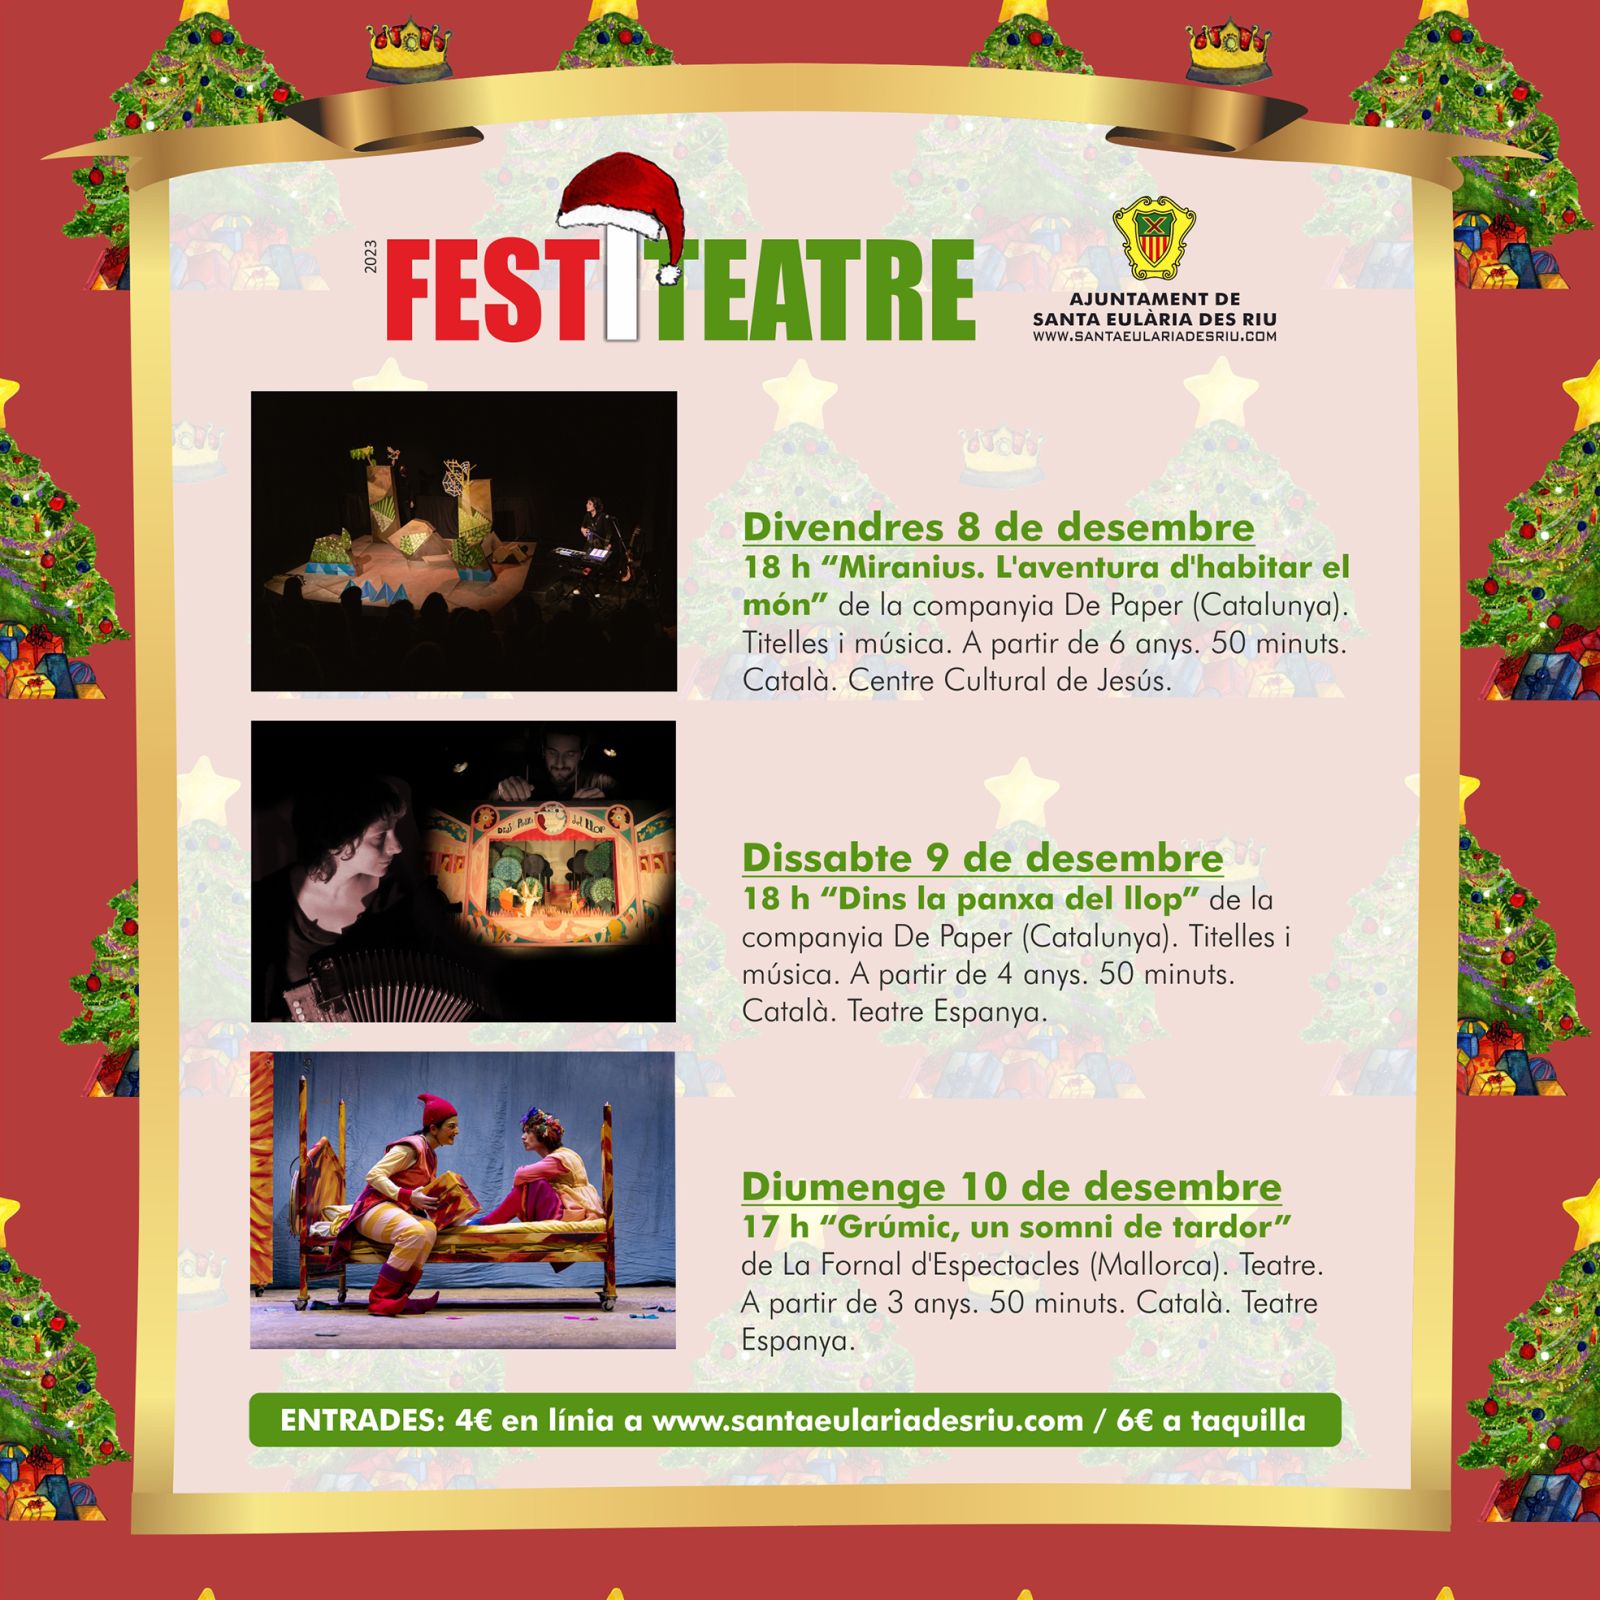 Cuentacuentos y teatro infantil para pasar un puente de lujo en Santa Eulària con el FestiContes y el FestiTeatre